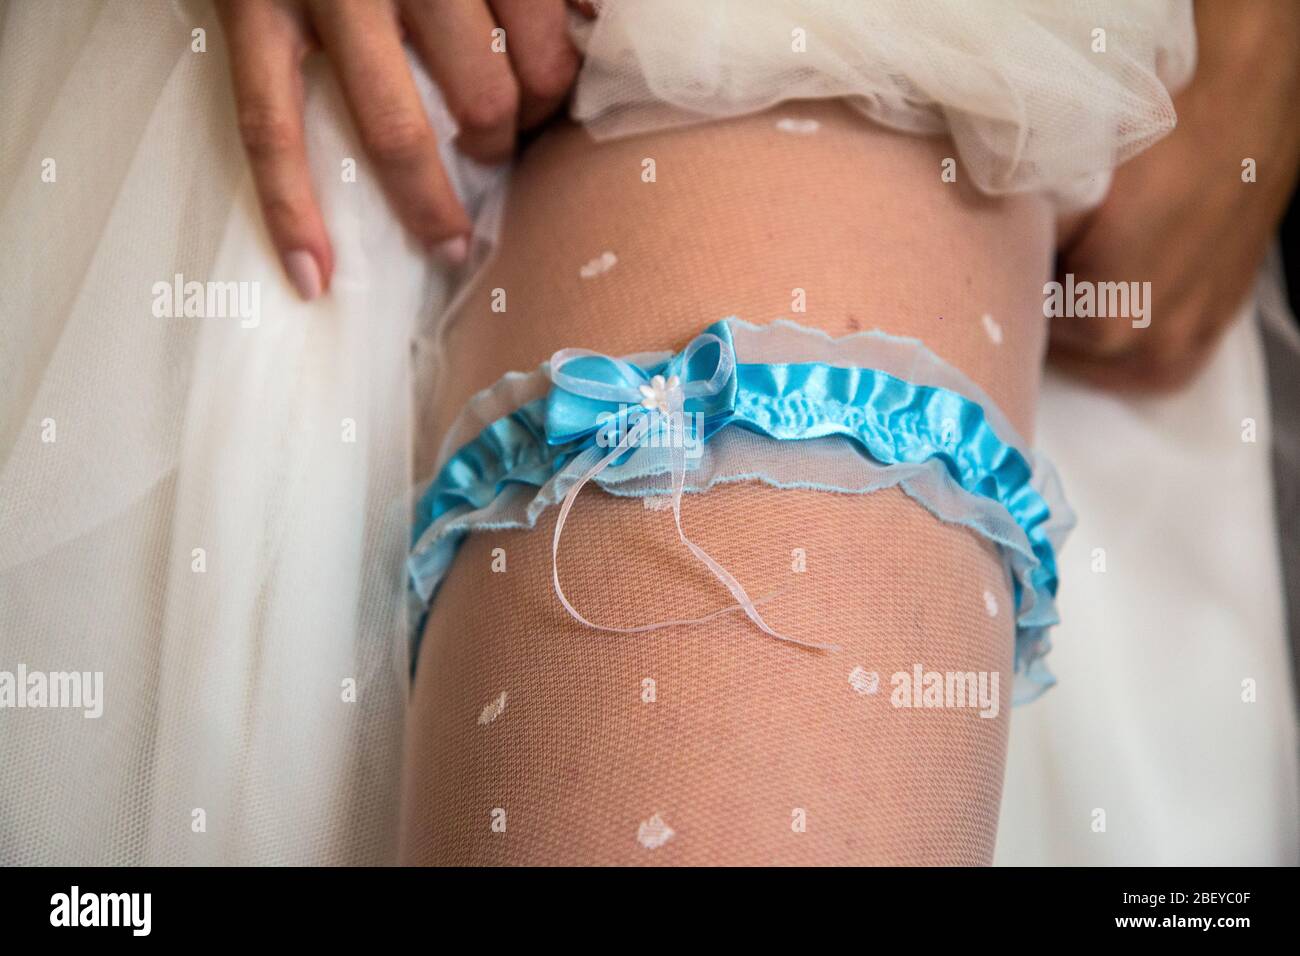 Le détail de la jambe d'une mariée. Elle porte le garde-robe de mariage traditionnel sous sa robe de mariage. Banque D'Images